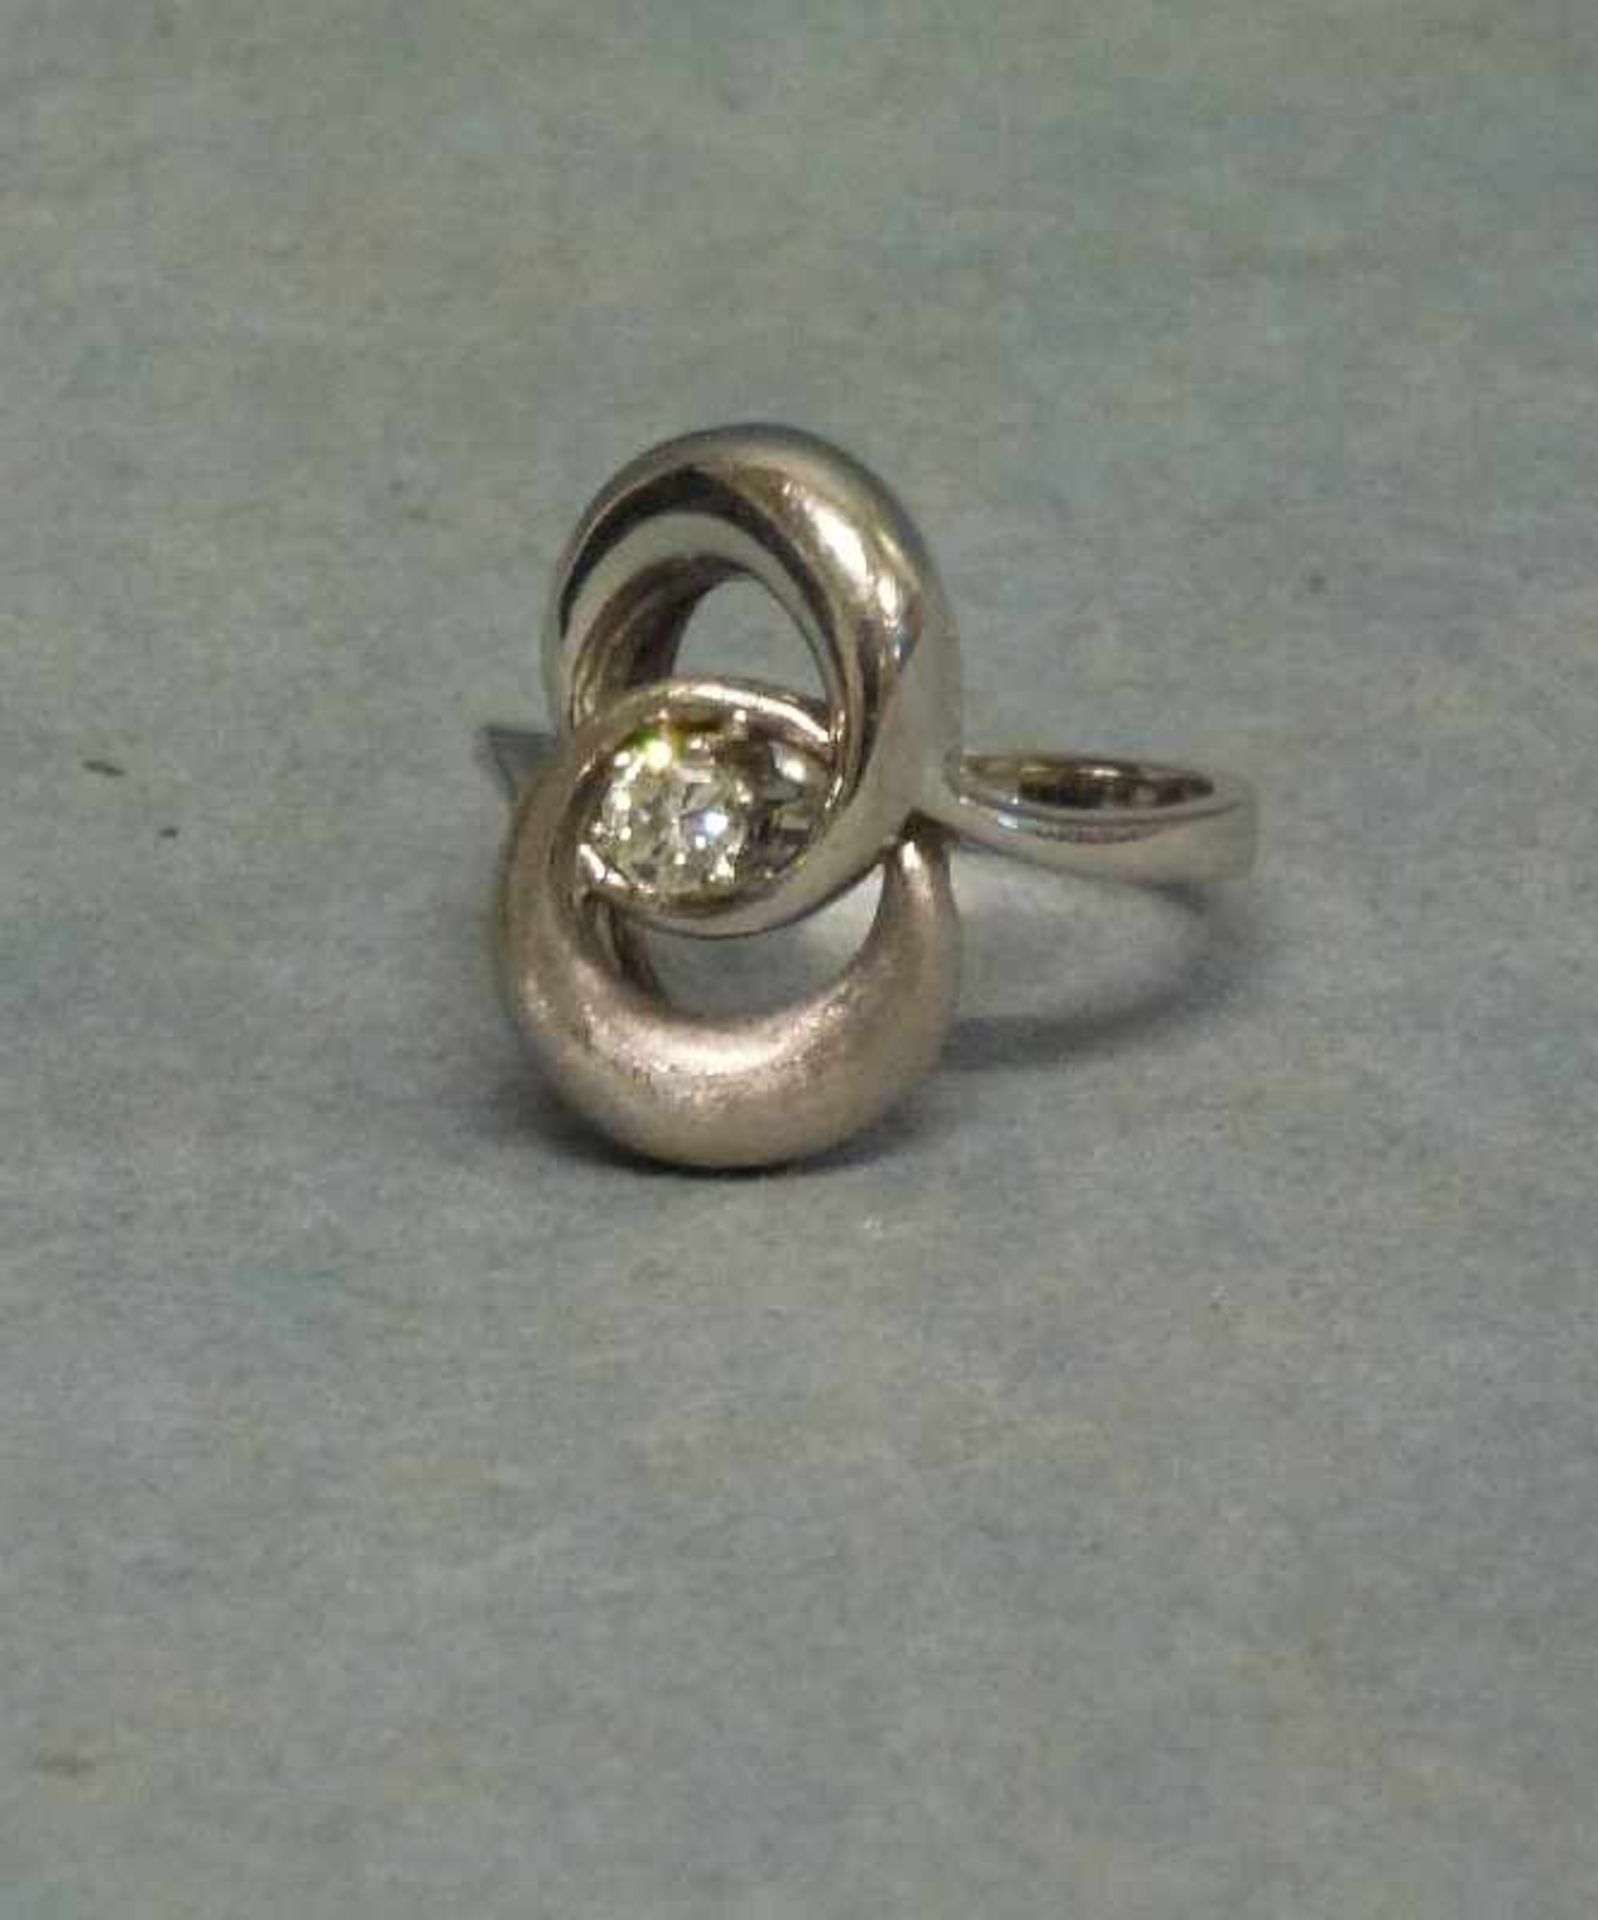 Ring, 585er WG Schleifenknoten, partiell mattiert, mittig Brillant, RG 56, 7,15 g - Image 2 of 3